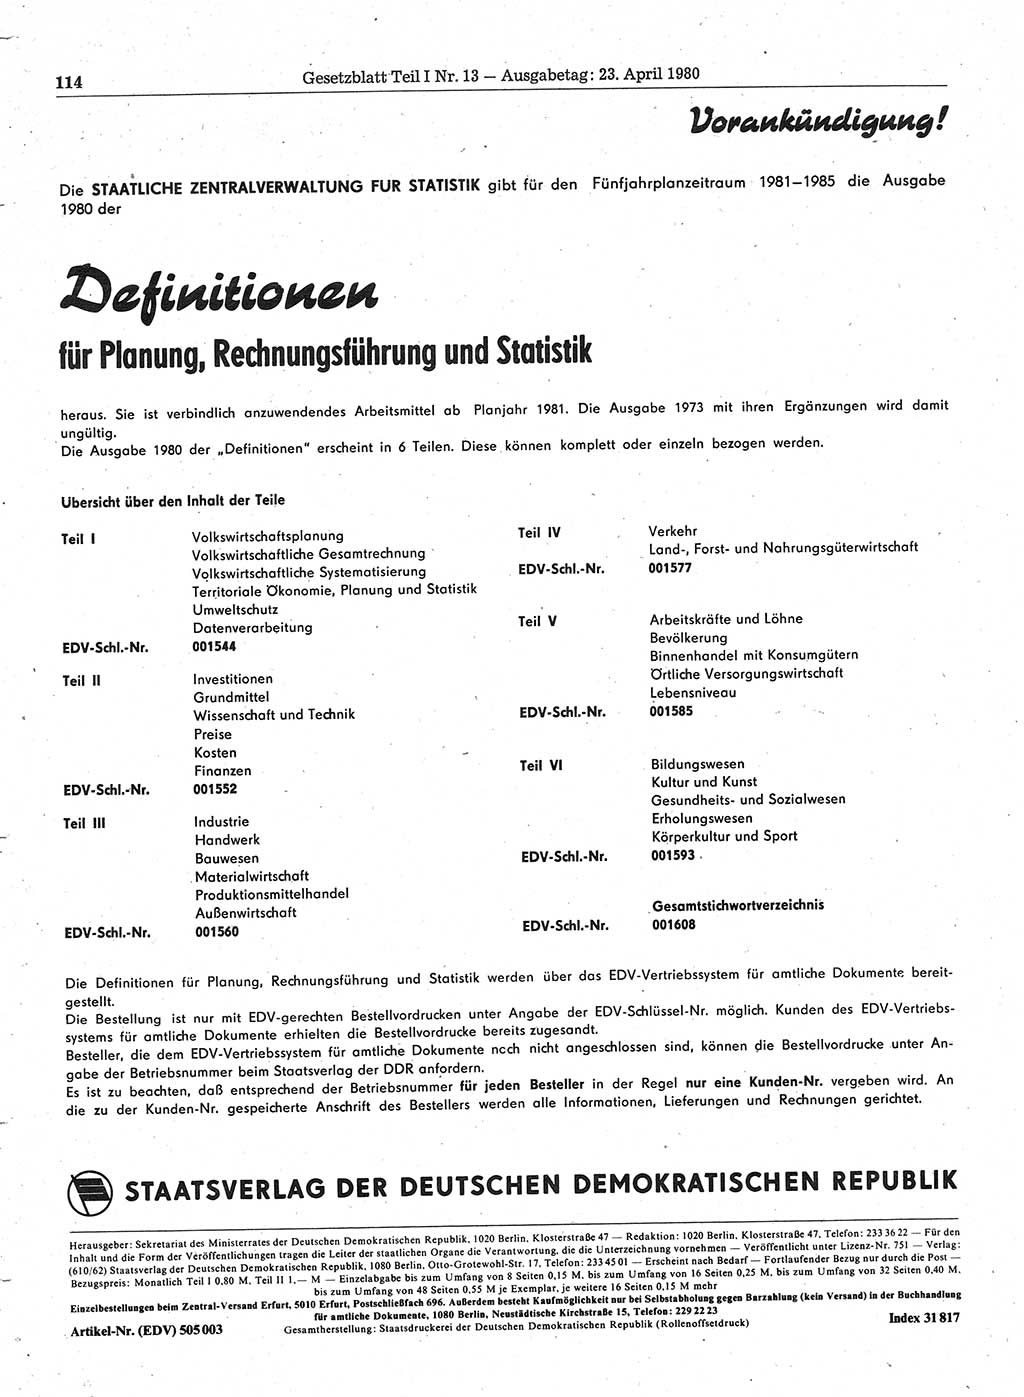 Gesetzblatt (GBl.) der Deutschen Demokratischen Republik (DDR) Teil Ⅰ 1980, Seite 114 (GBl. DDR Ⅰ 1980, S. 114)